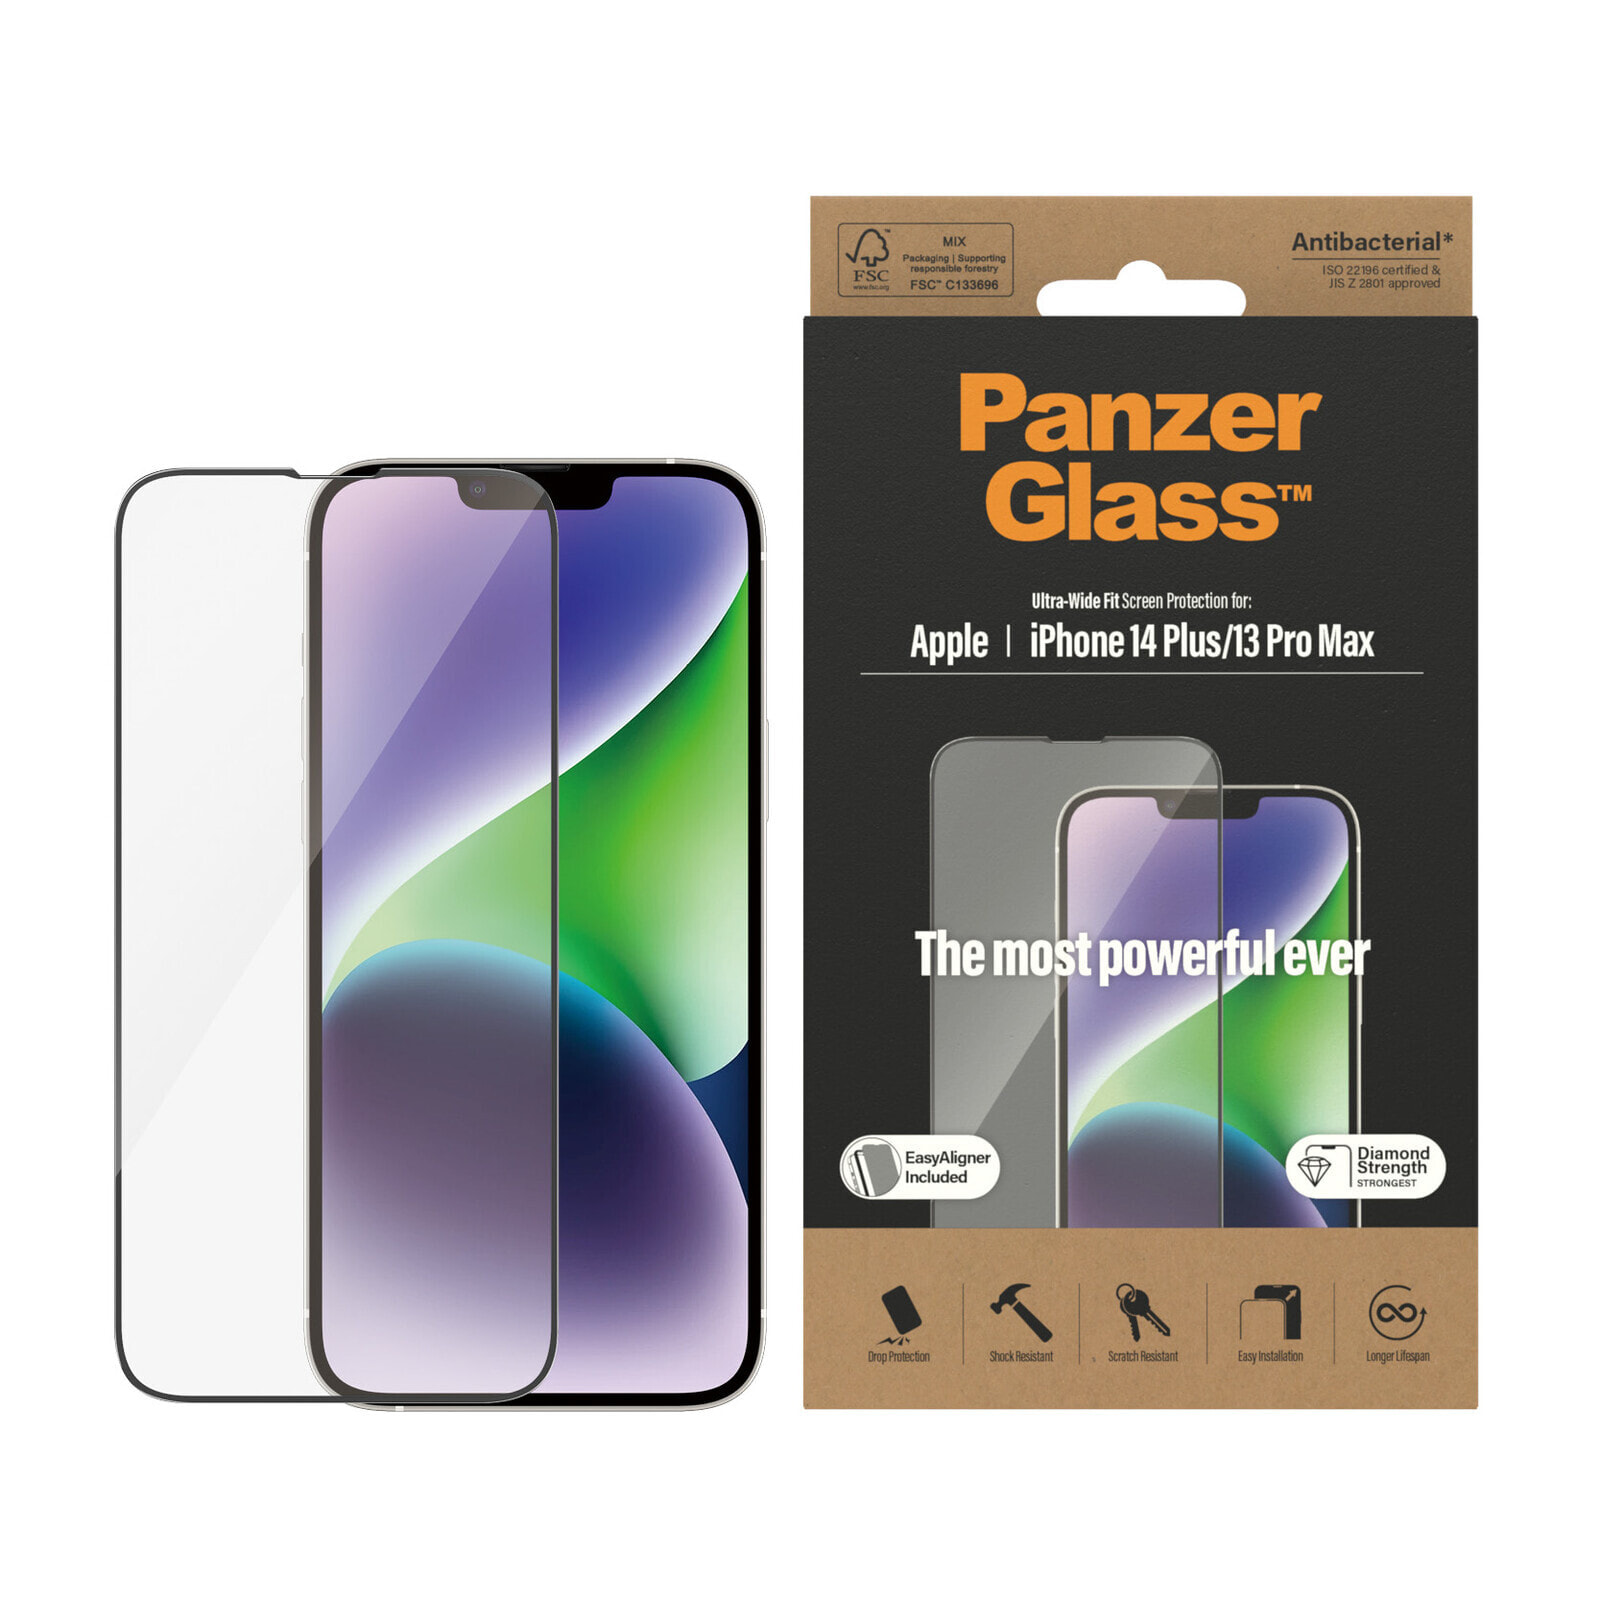 PanzerGlass Ultra-Wide Fit Apple iPhone Прозрачная защитная пленка 1 шт 2785